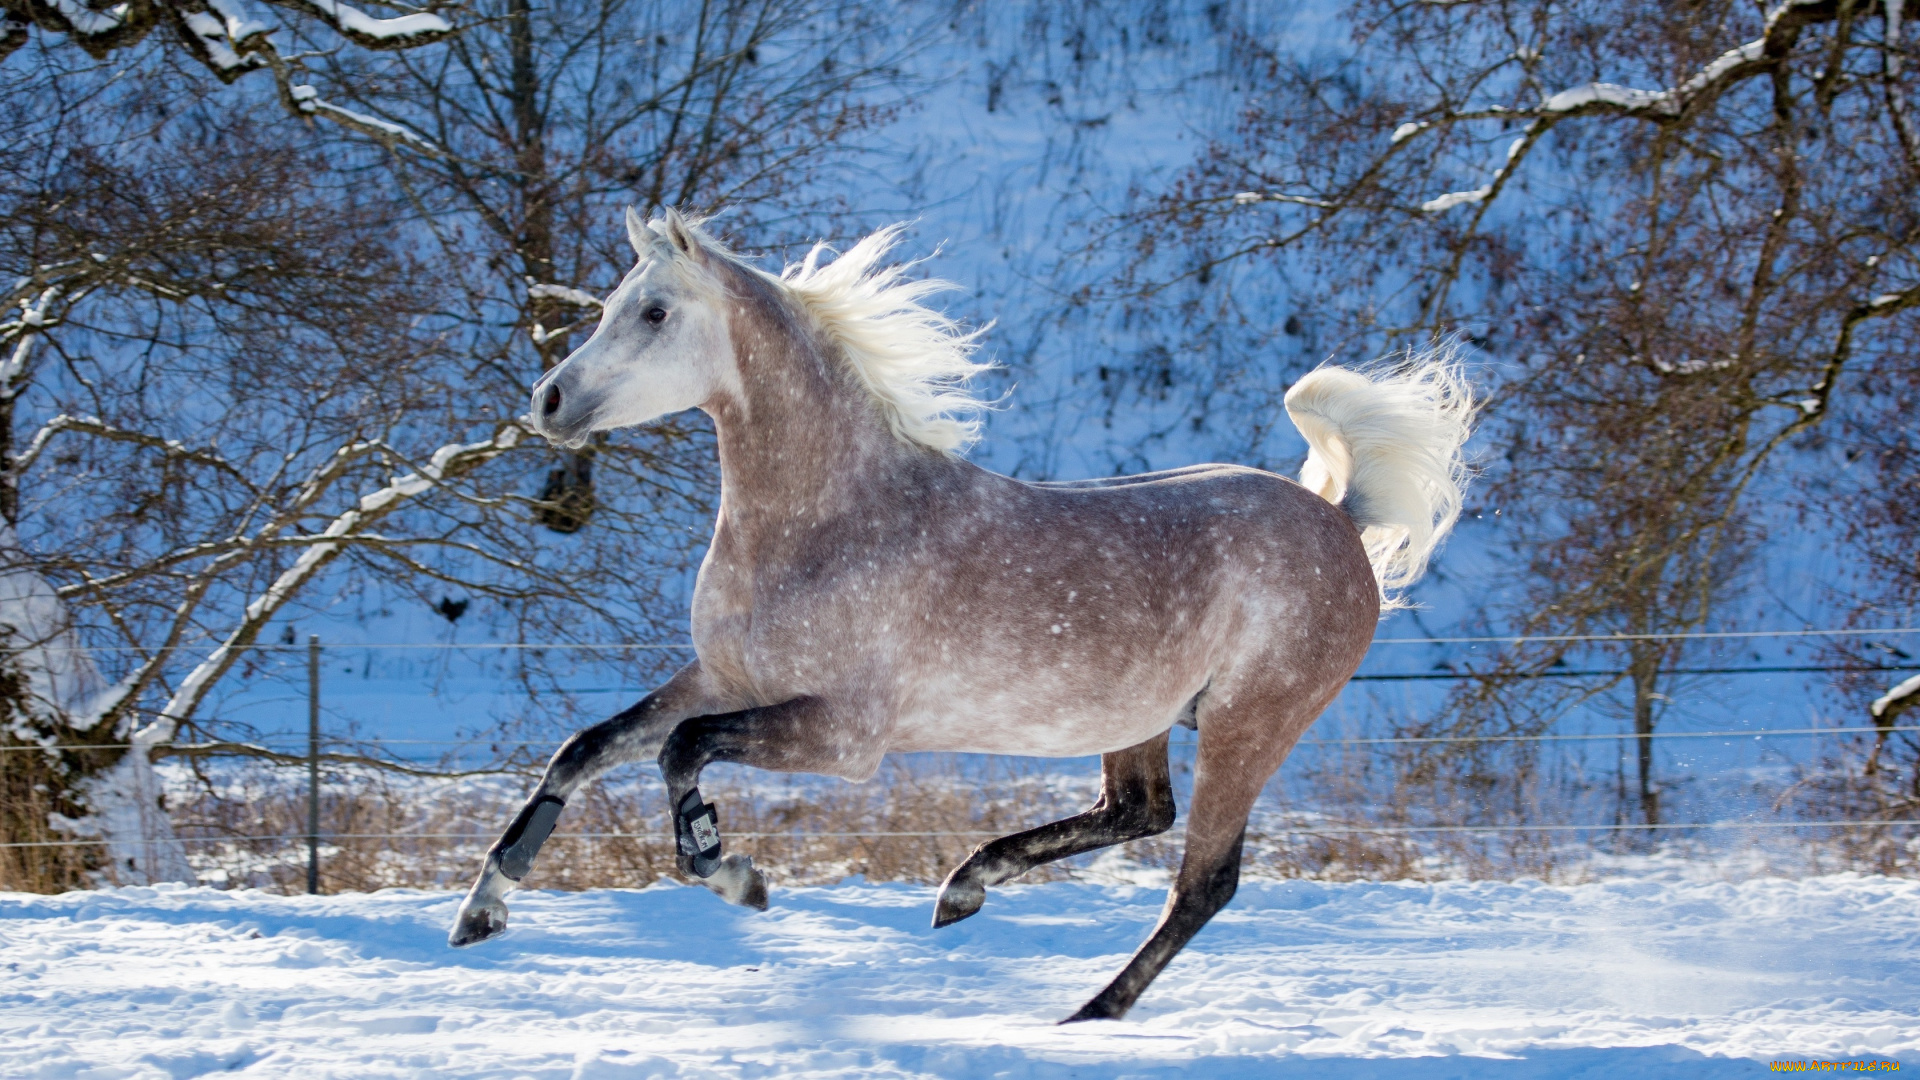 автор, , oliverseitz, животные, лошади, конь, серый, галоп, бег, движение, грива, грация, красота, мощь, зима, снег, загон, резвый